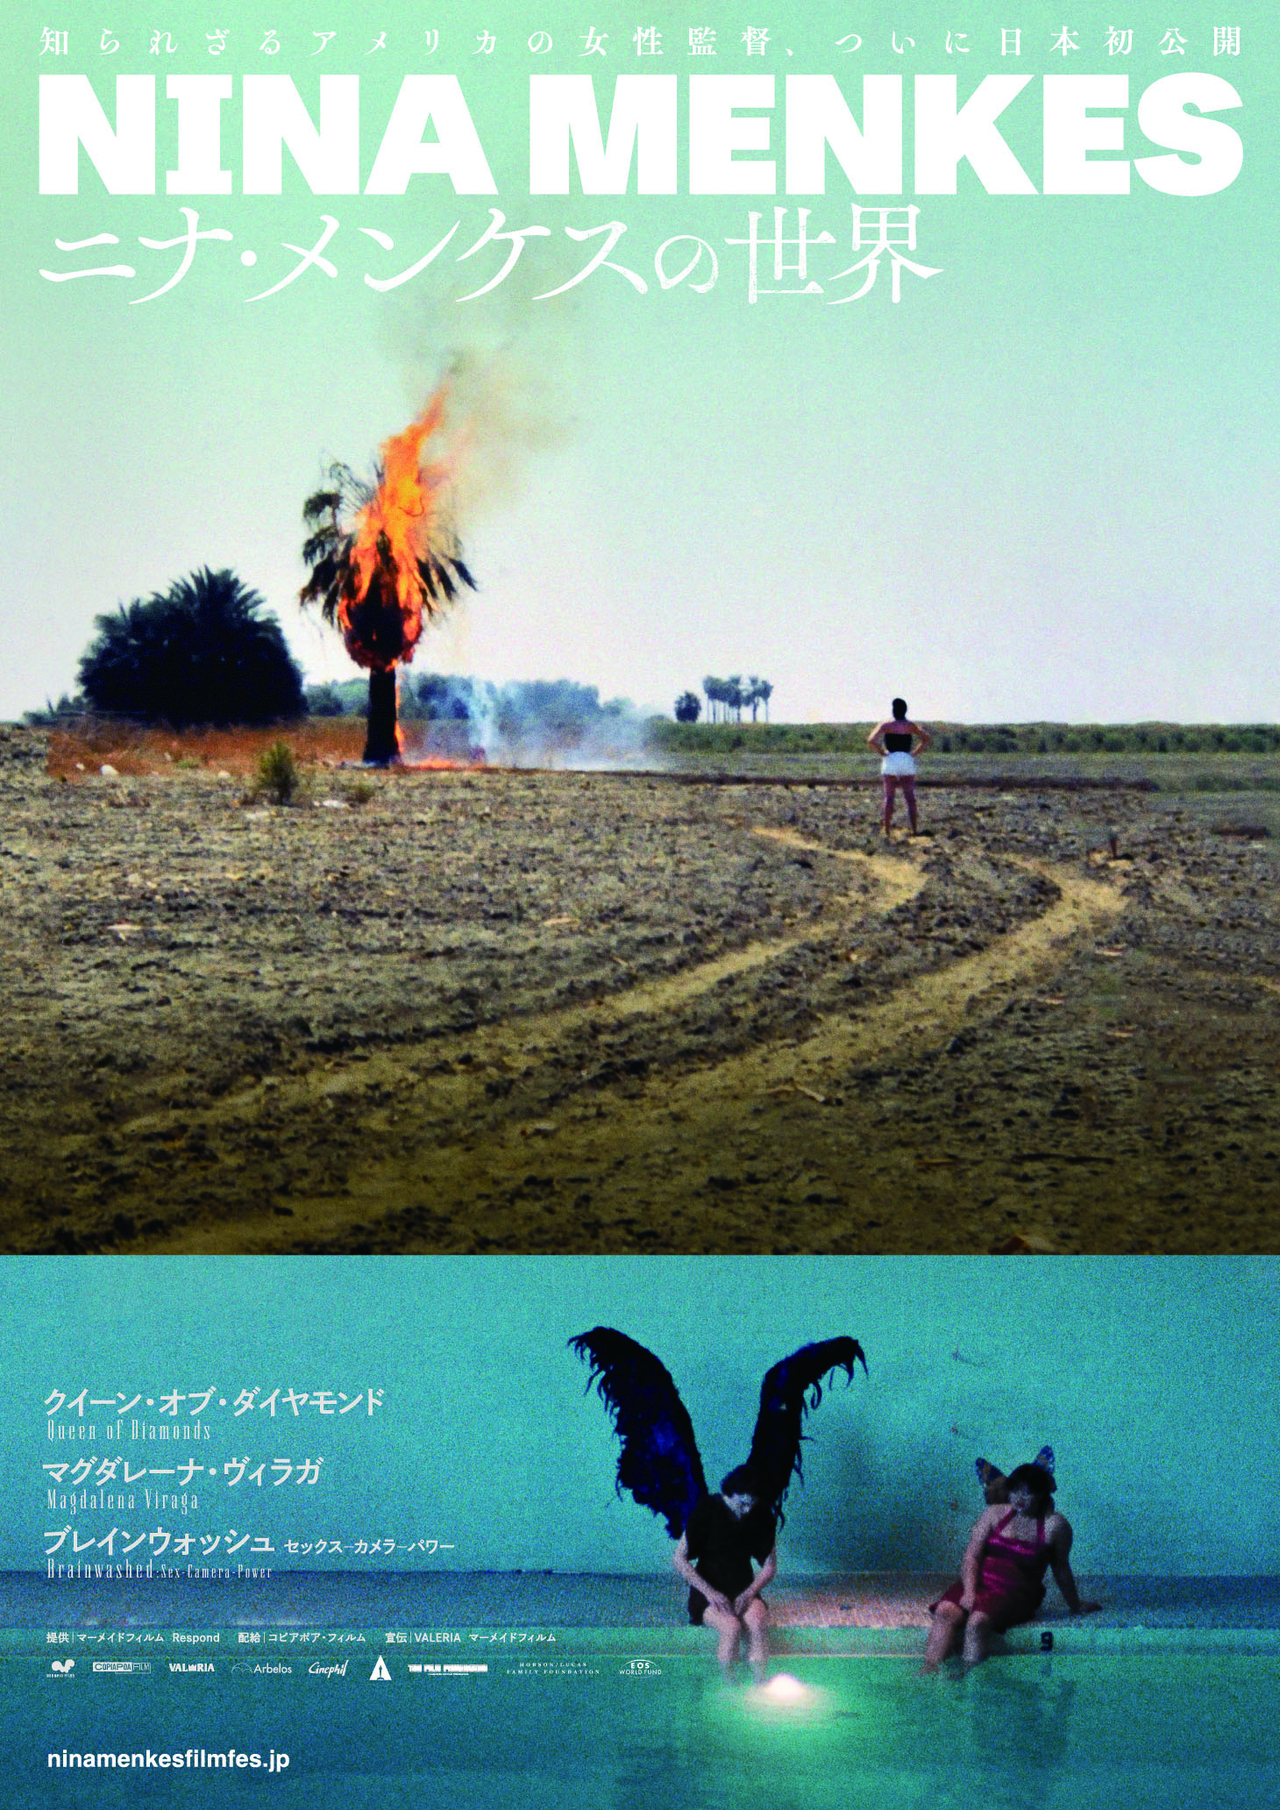 脳裏に焼き付いて離れない映像、知られざる孤高の女性監督ニナ・メンケス3作品が日本初公開